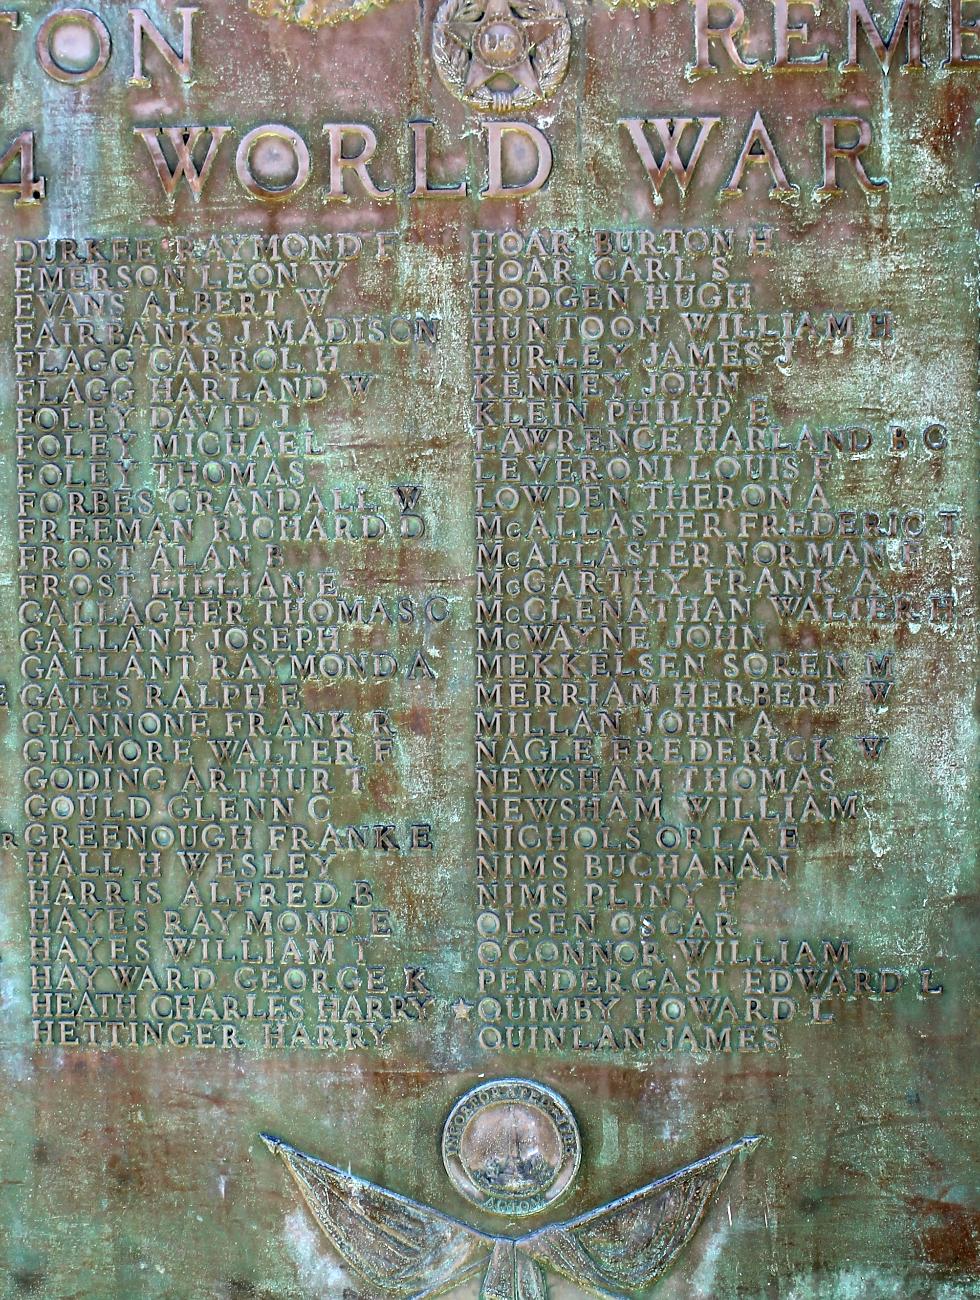 Acton Massachusetts World War I Veterans Memorial